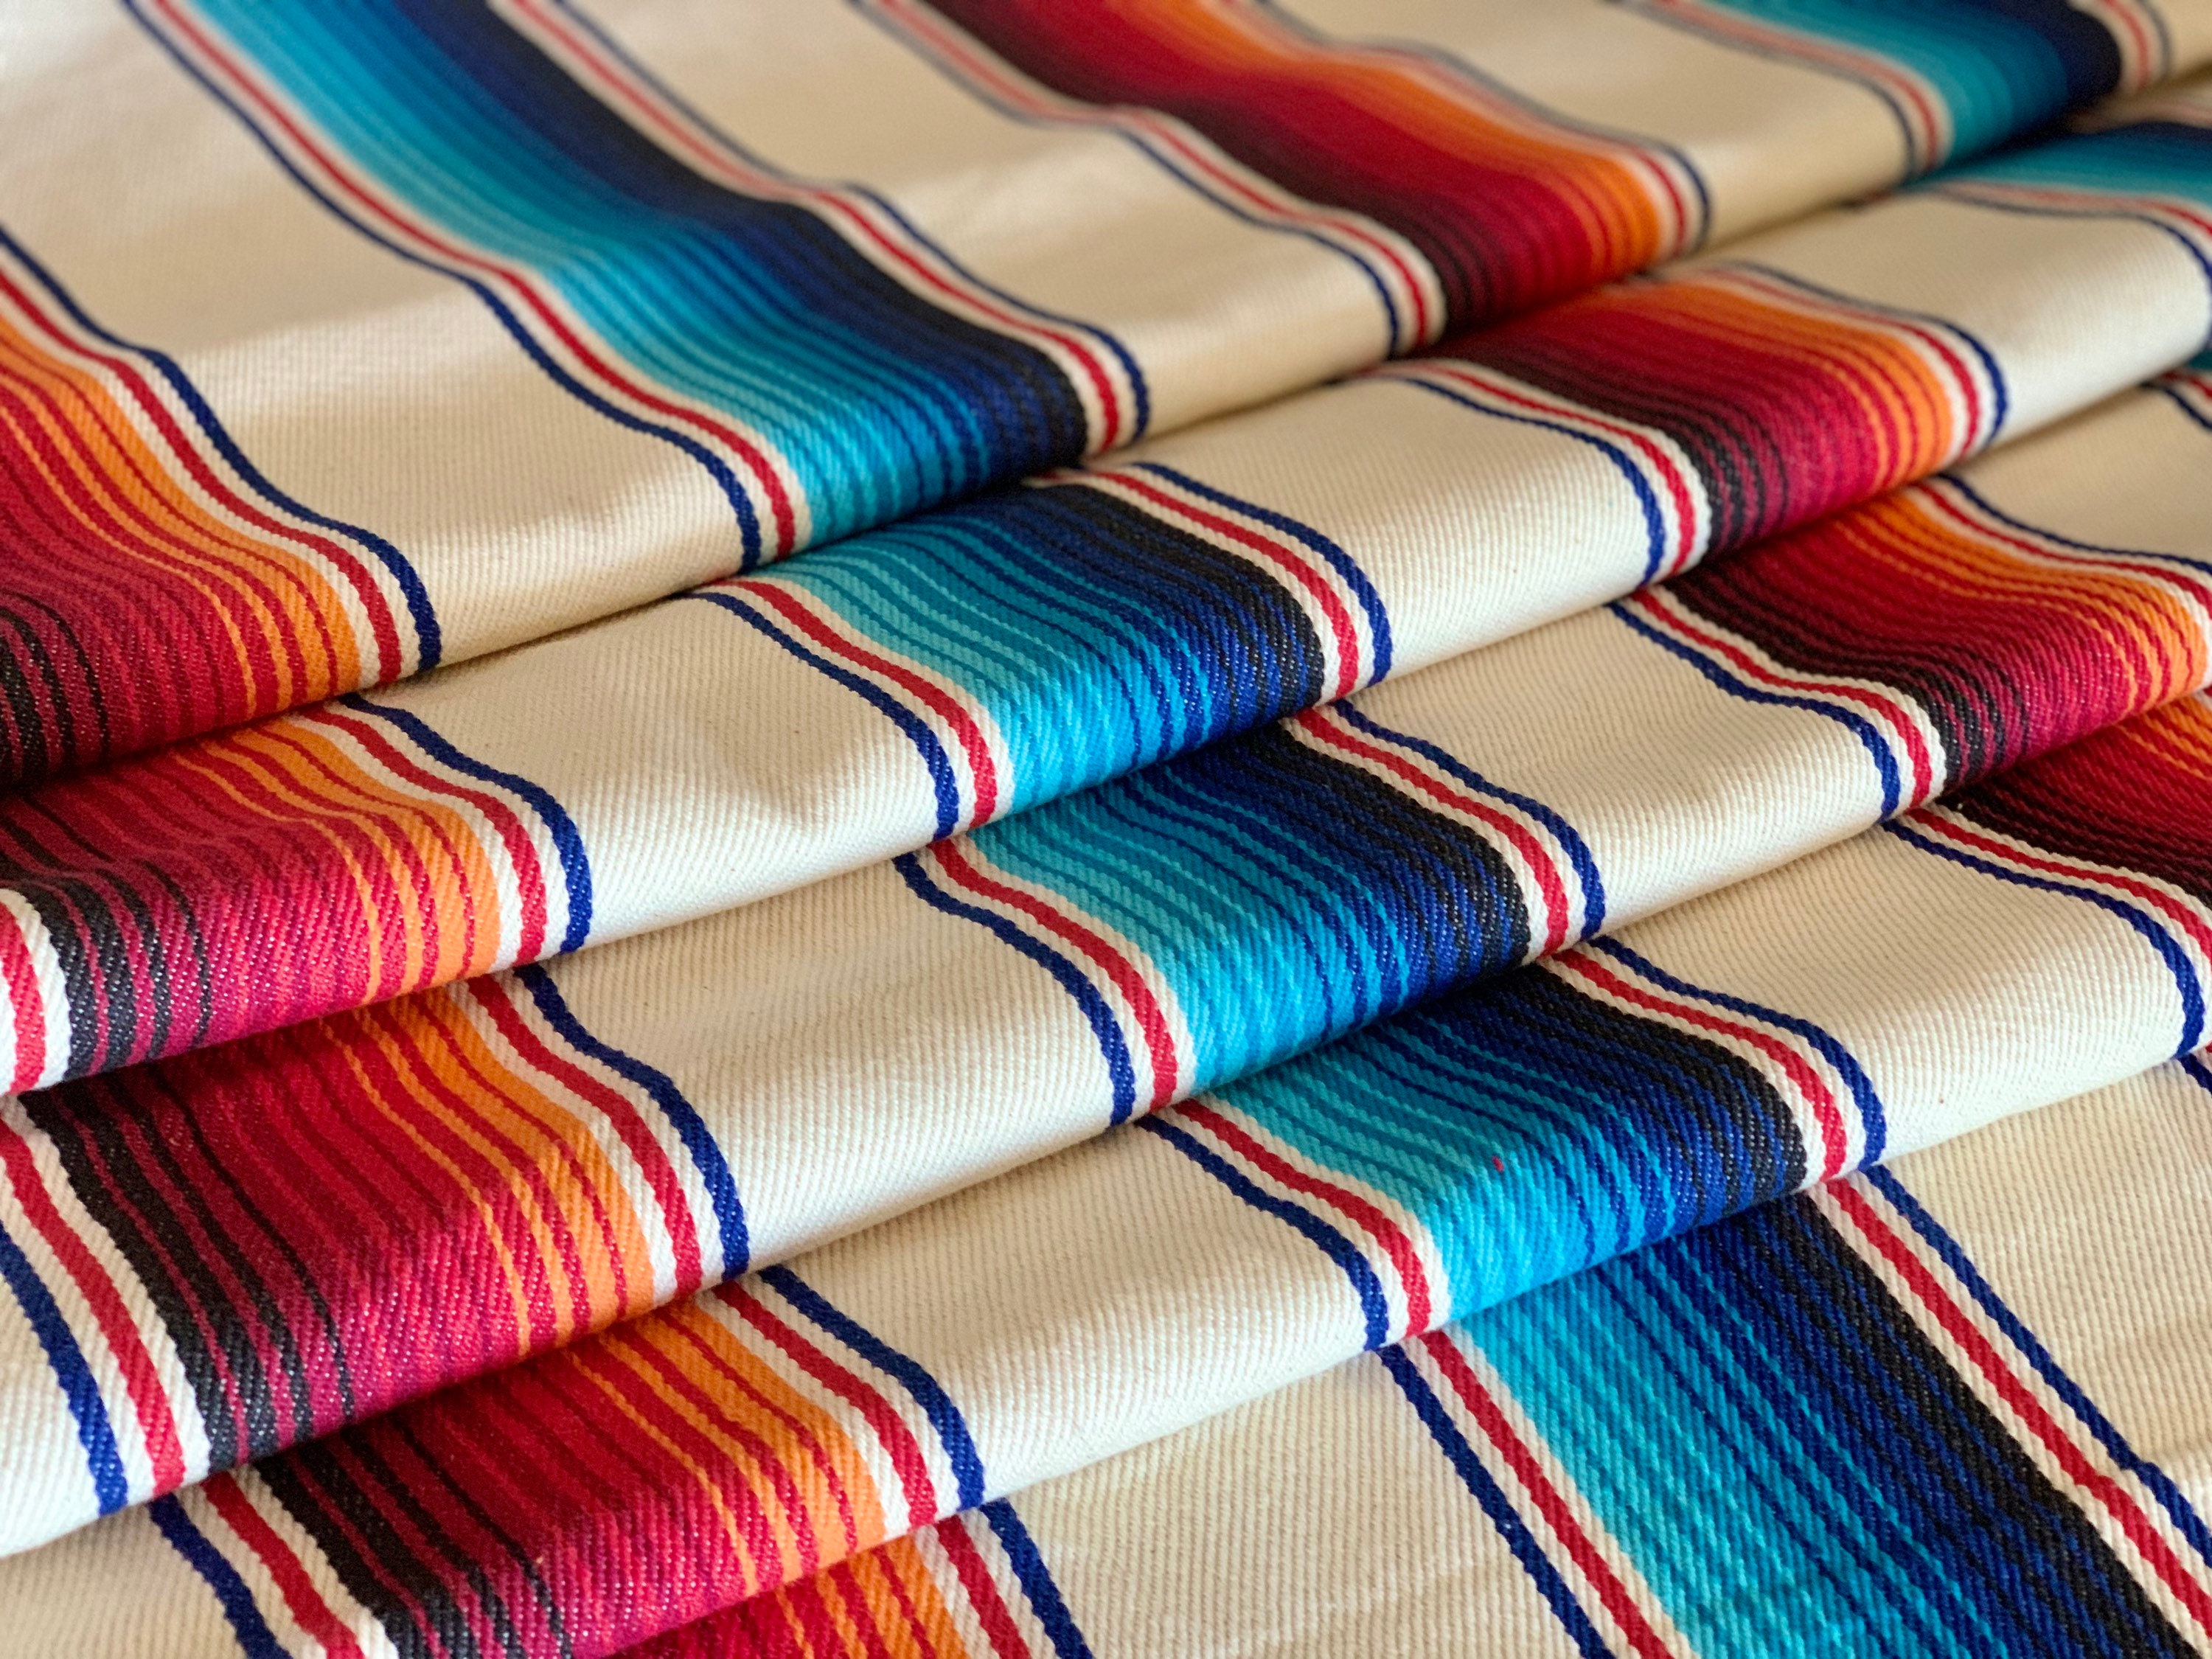 Southwest Upholstery Twill Fabric BOHO Ranch Fabric Serape Style Saddle Blanket Southwest Fabric Ethnic Stripe Western Fabric